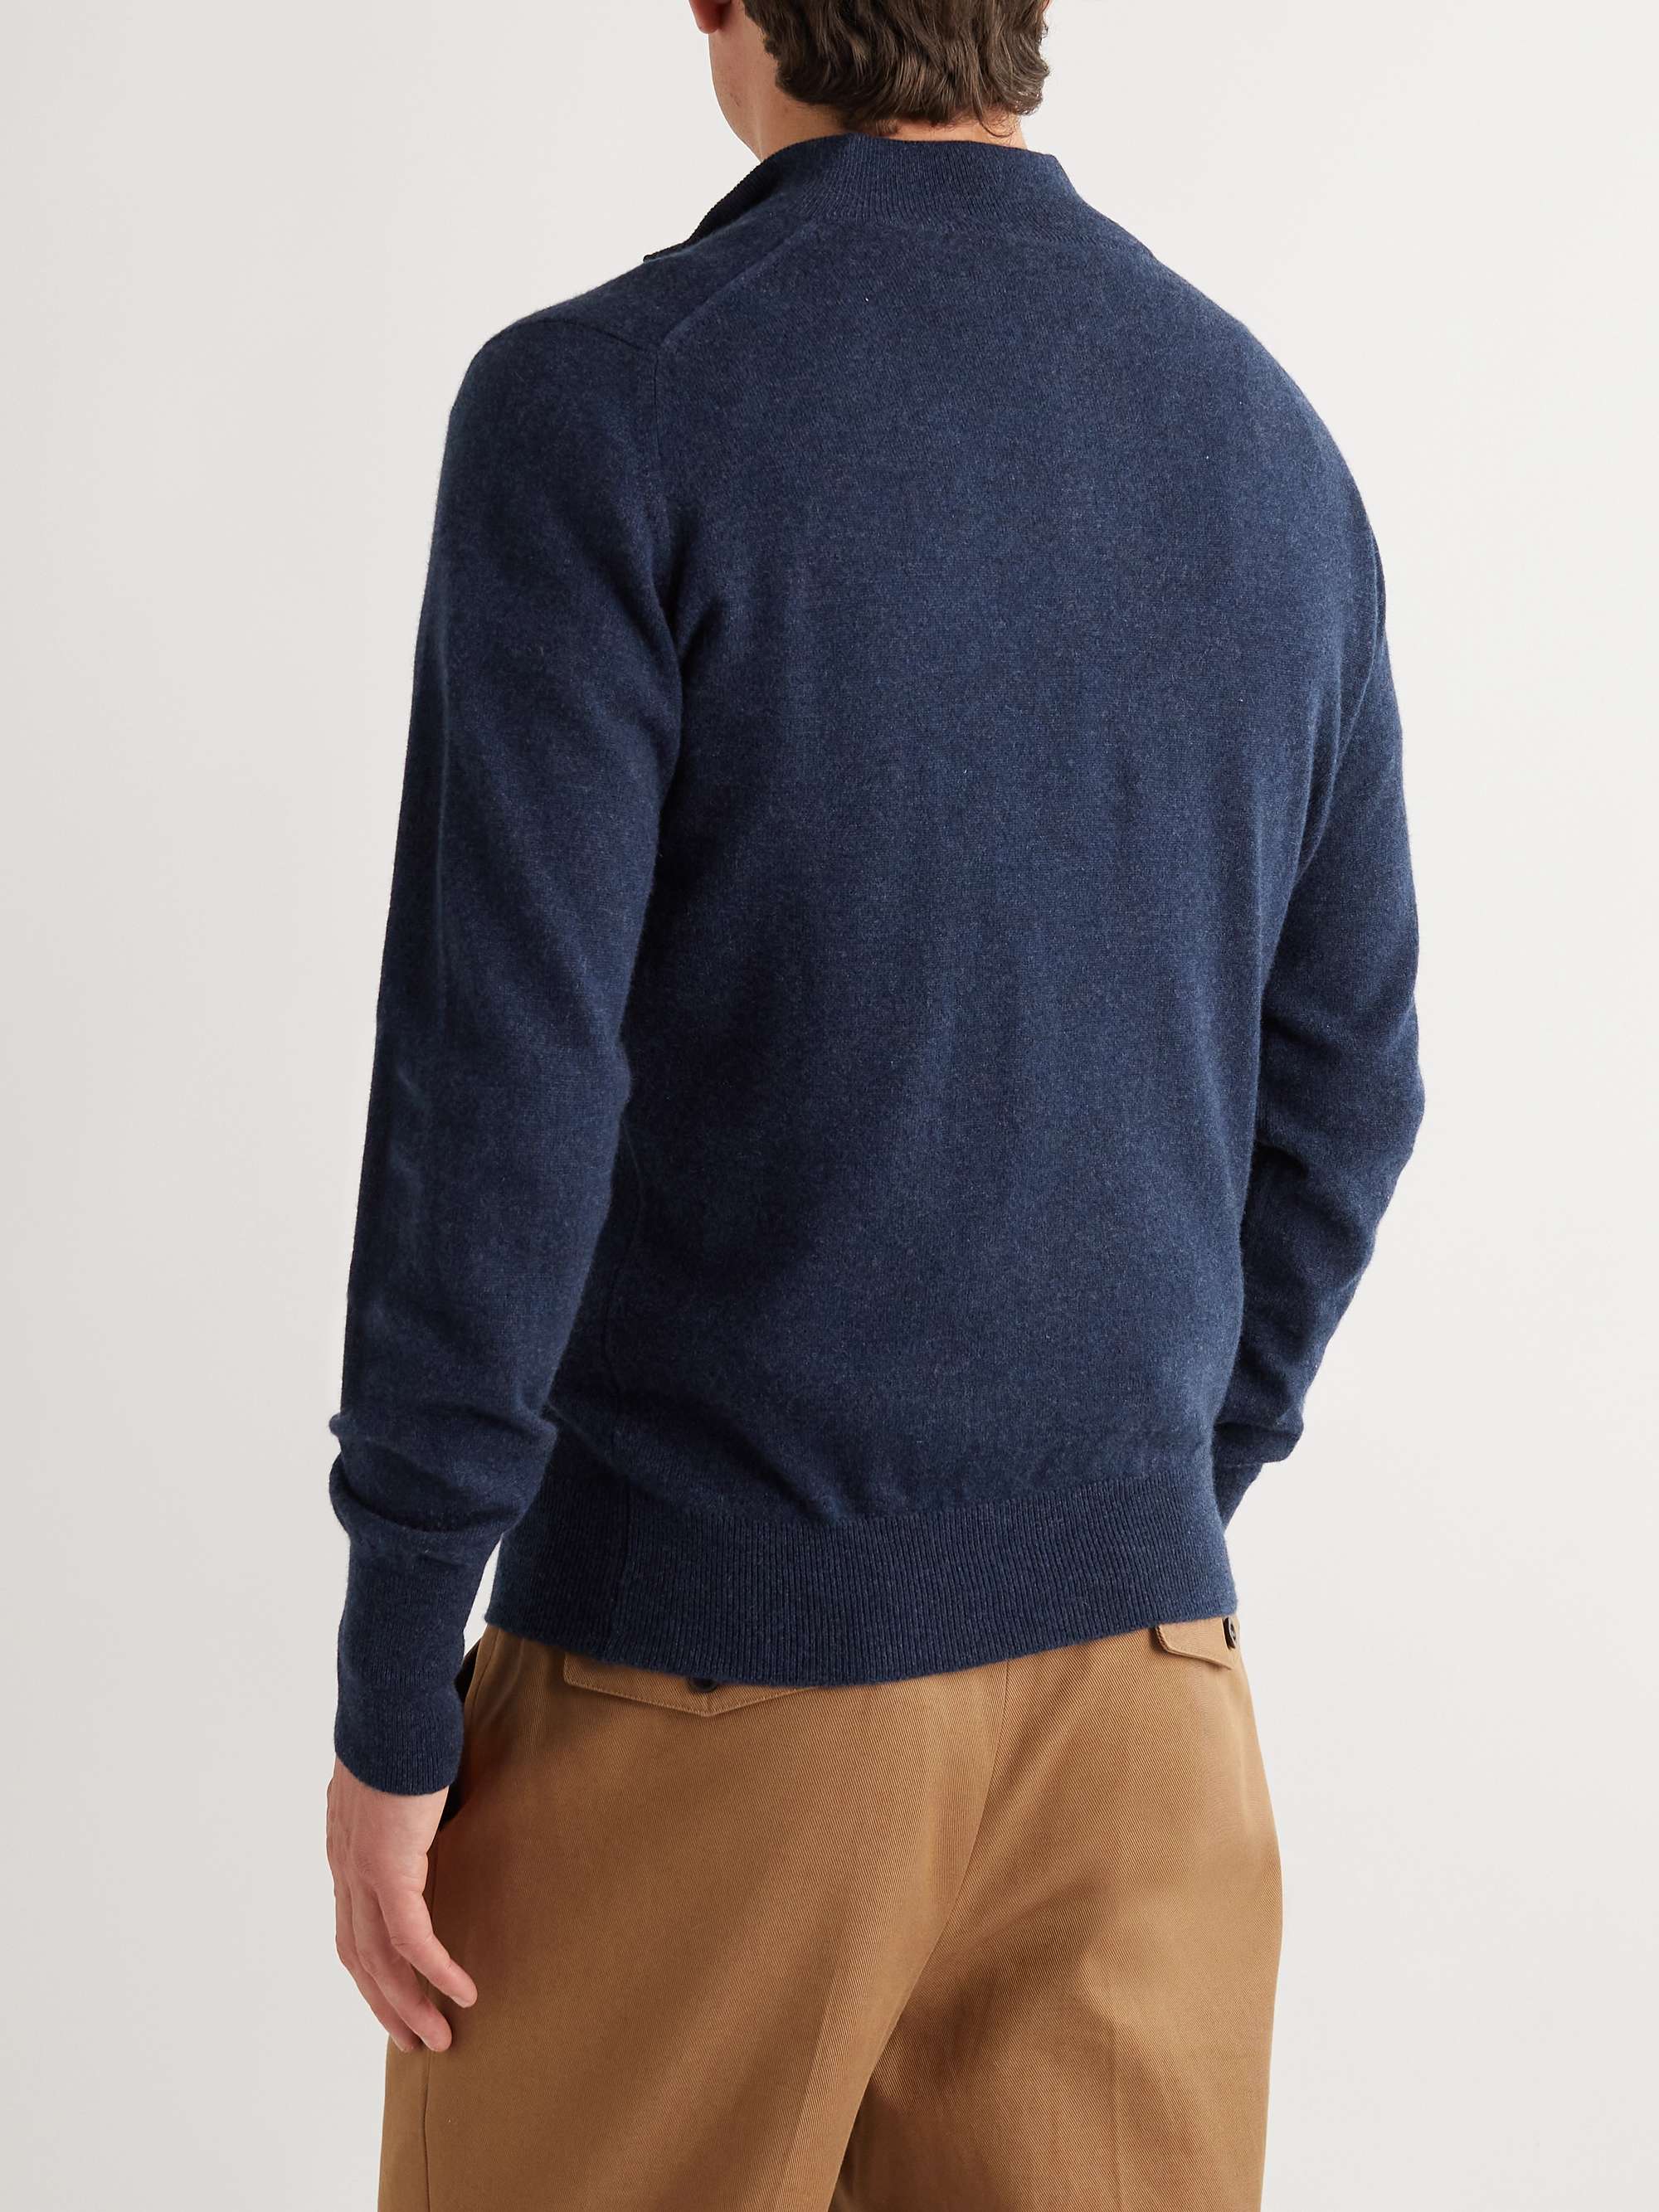 WILLIAM LOCKIE Oxton Cashmere Half-Zip Sweater